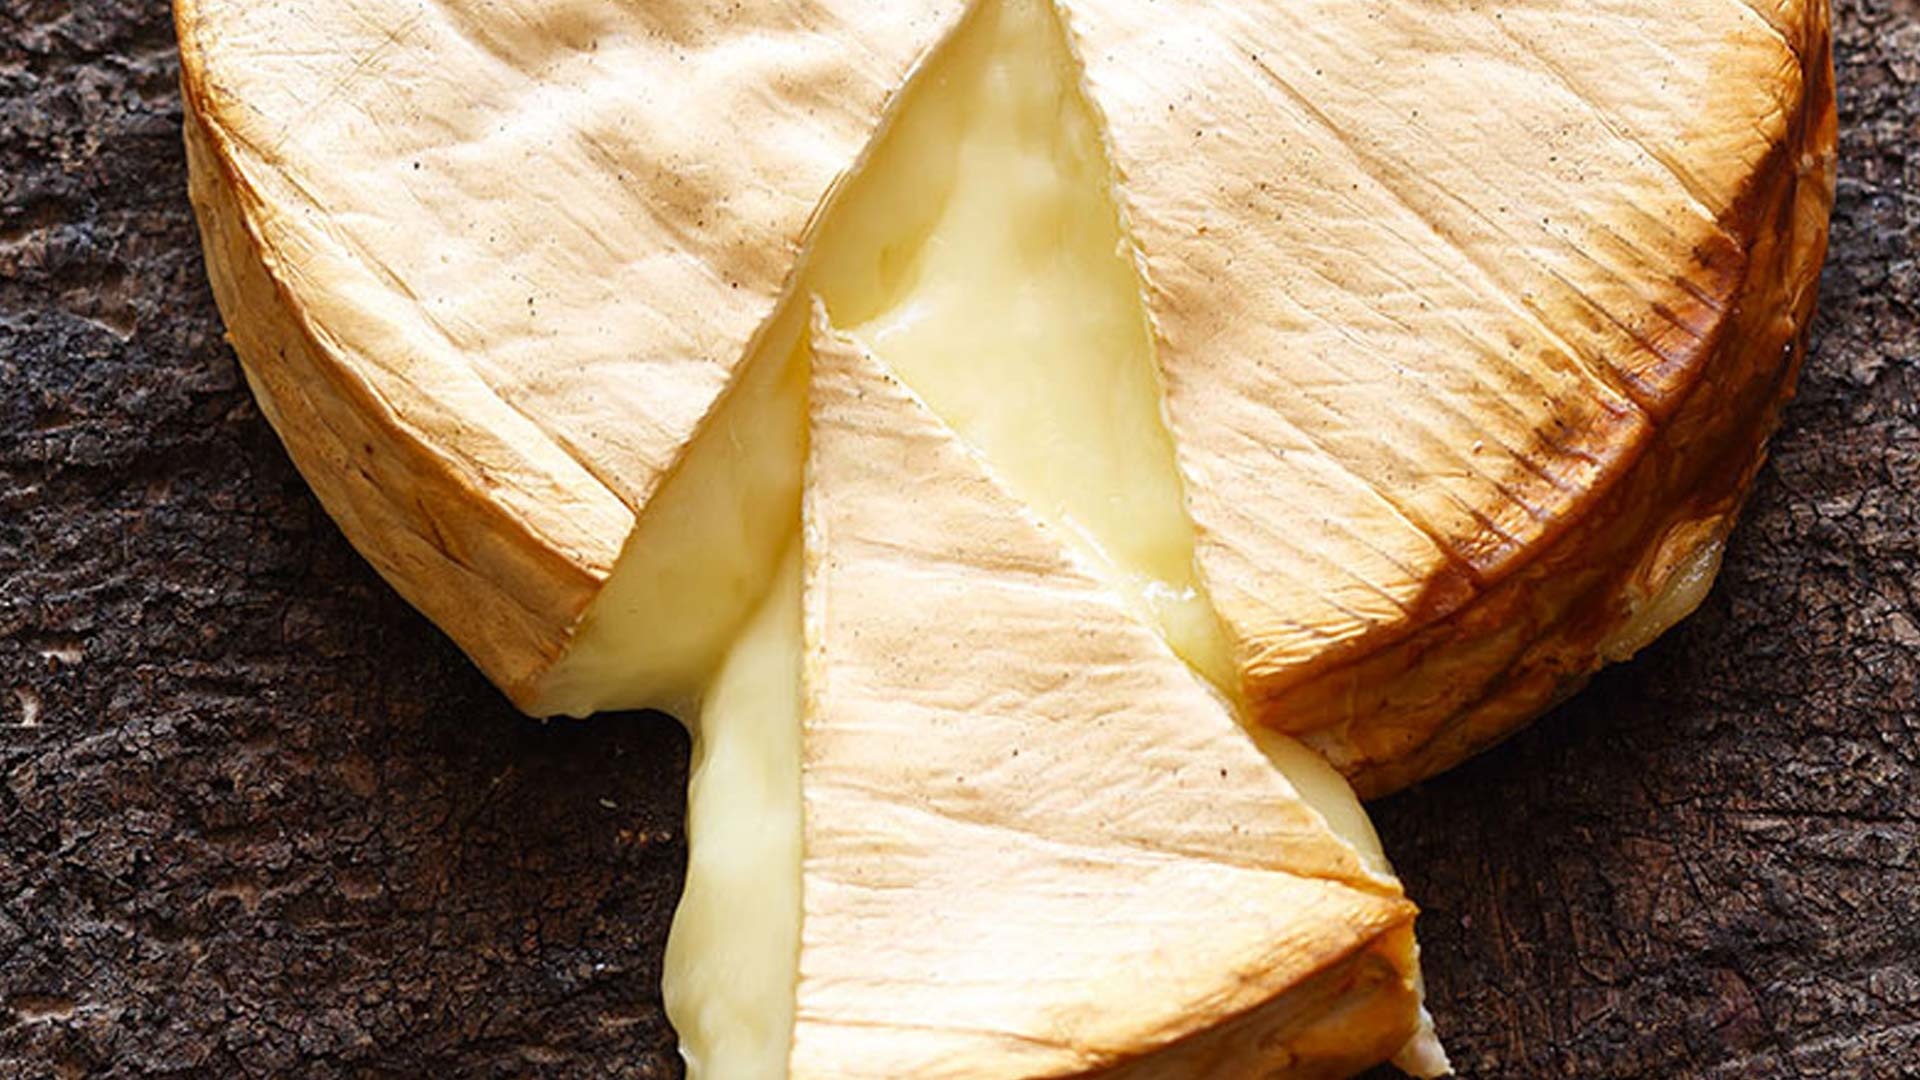  Brie vom Zedernholzbrett mit Brot aus dem Dutch Oven


